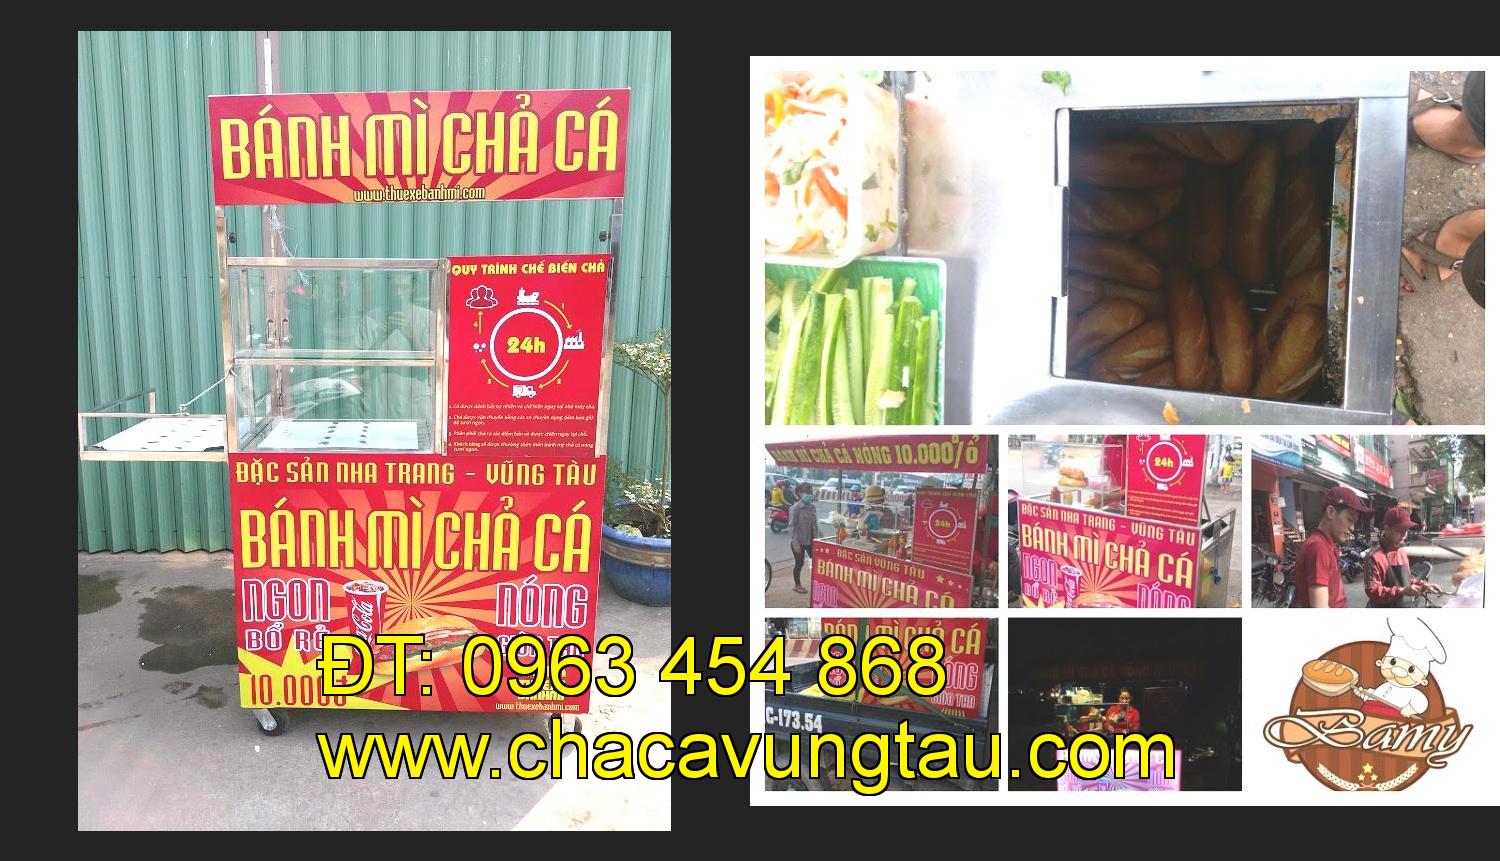 Bán xe bánh mì chả cá tại tỉnh Lâm Đồng